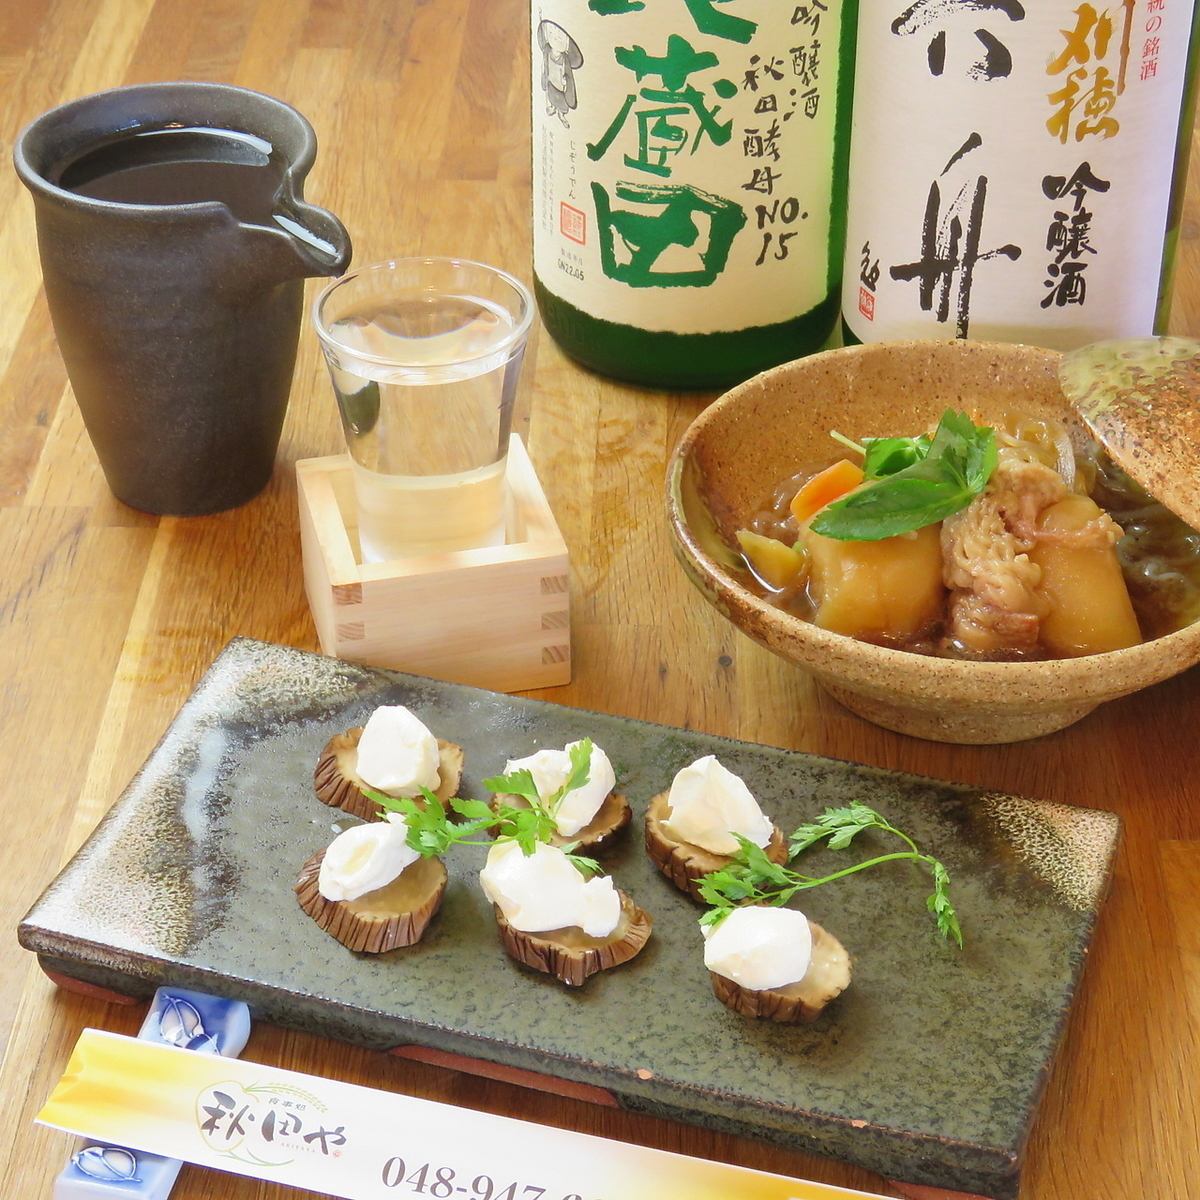 可以享用秋田米和清酒的日式居酒屋